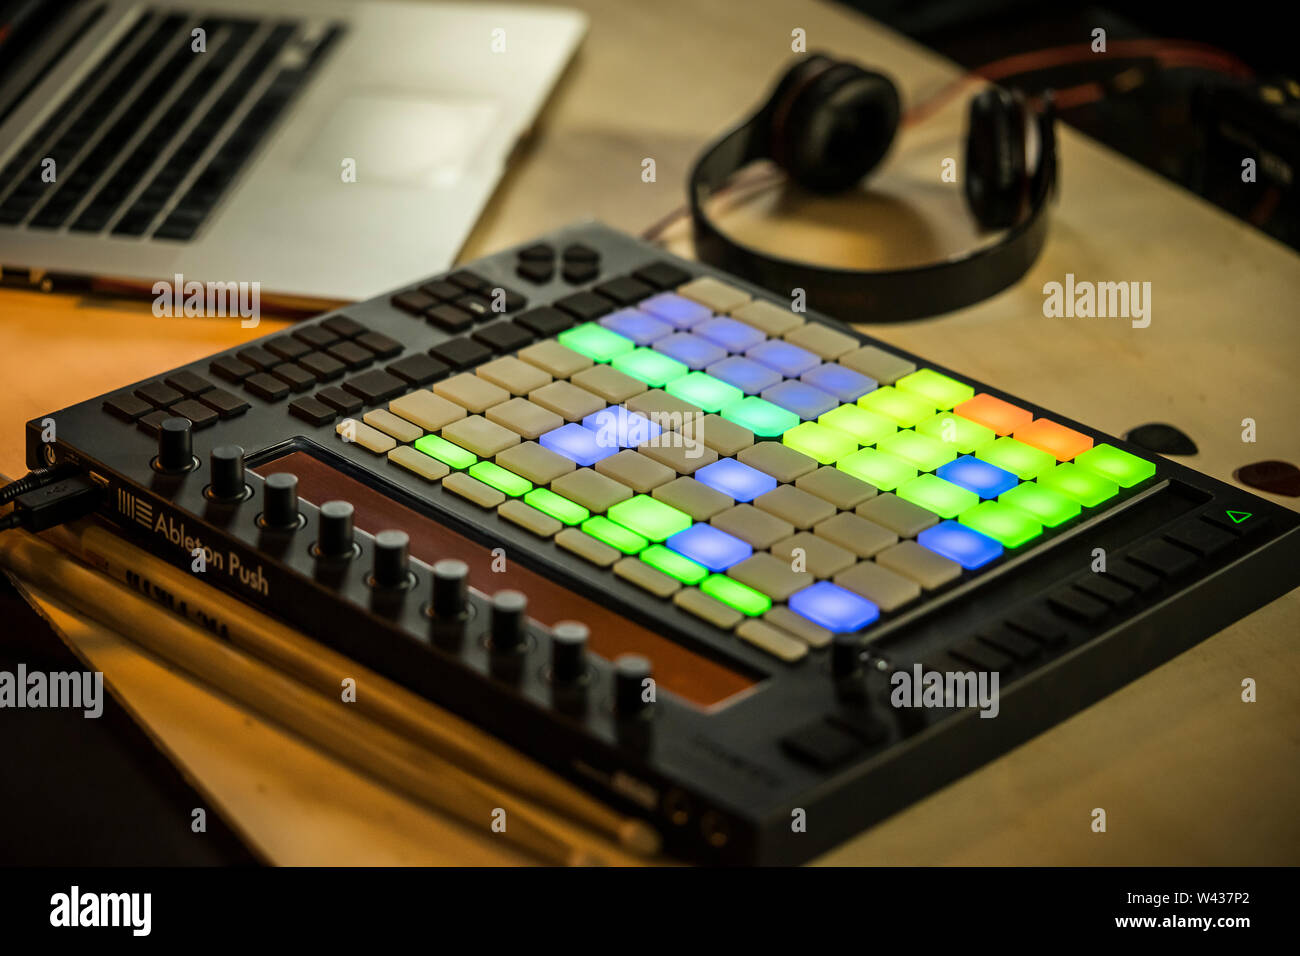 Home produzione di musica. Un Ableton spingere midi pad controller con Macbook e cuffie Foto Stock